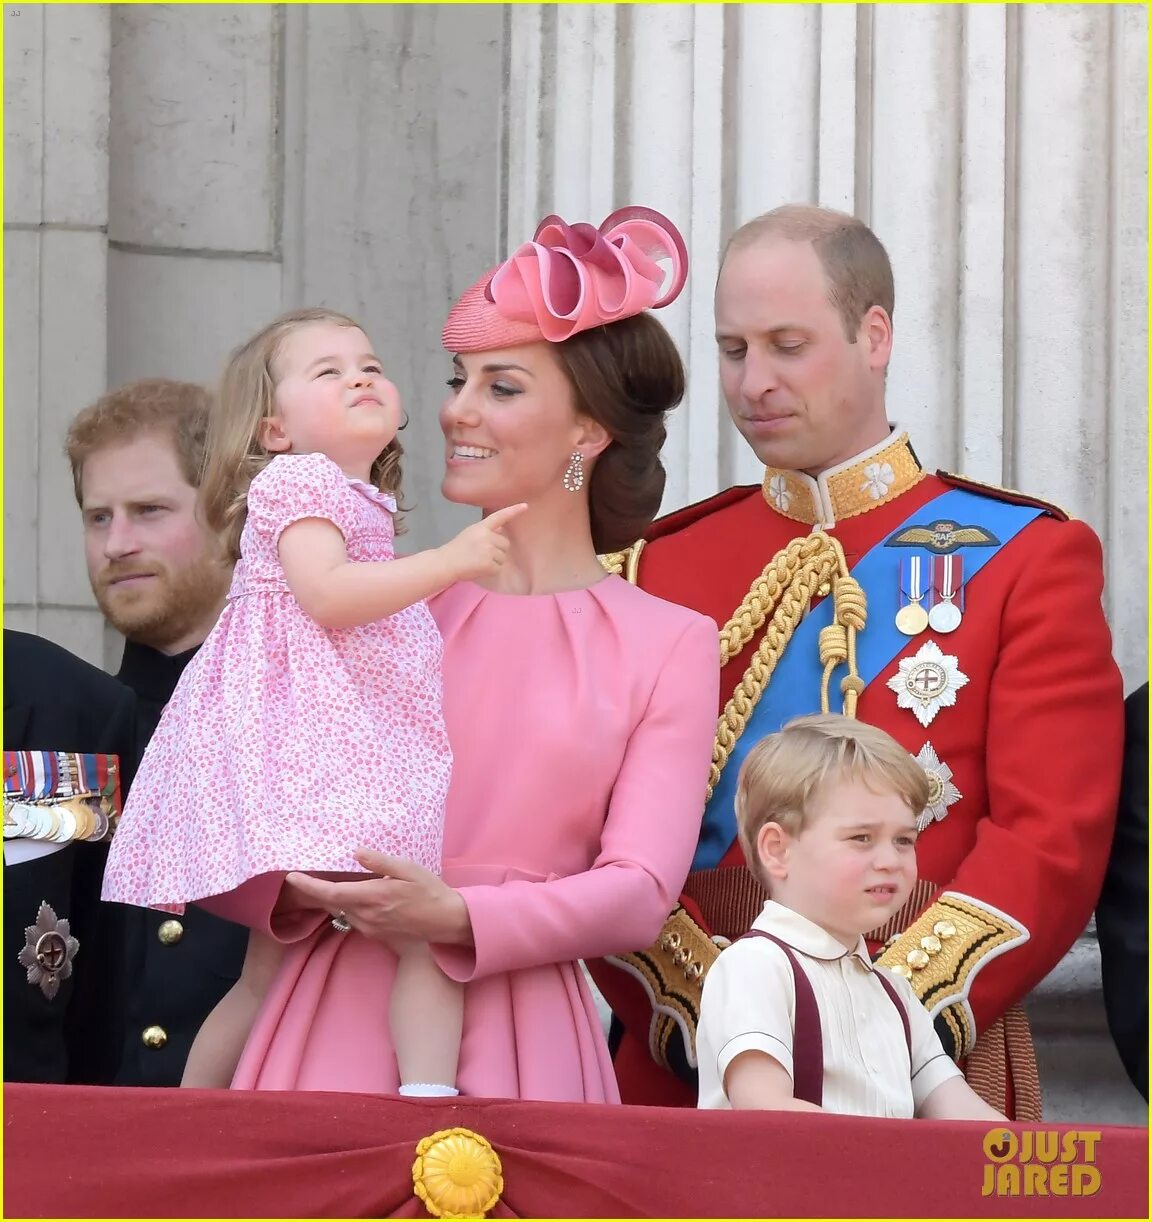 Сколько лет было принцу. Принц Уильям и Кейт Миддлтон. Принц Великобритании Уильям и Кейт. Принц Виллиам и Кейт. Уильям принц Уэльский и Кейт.